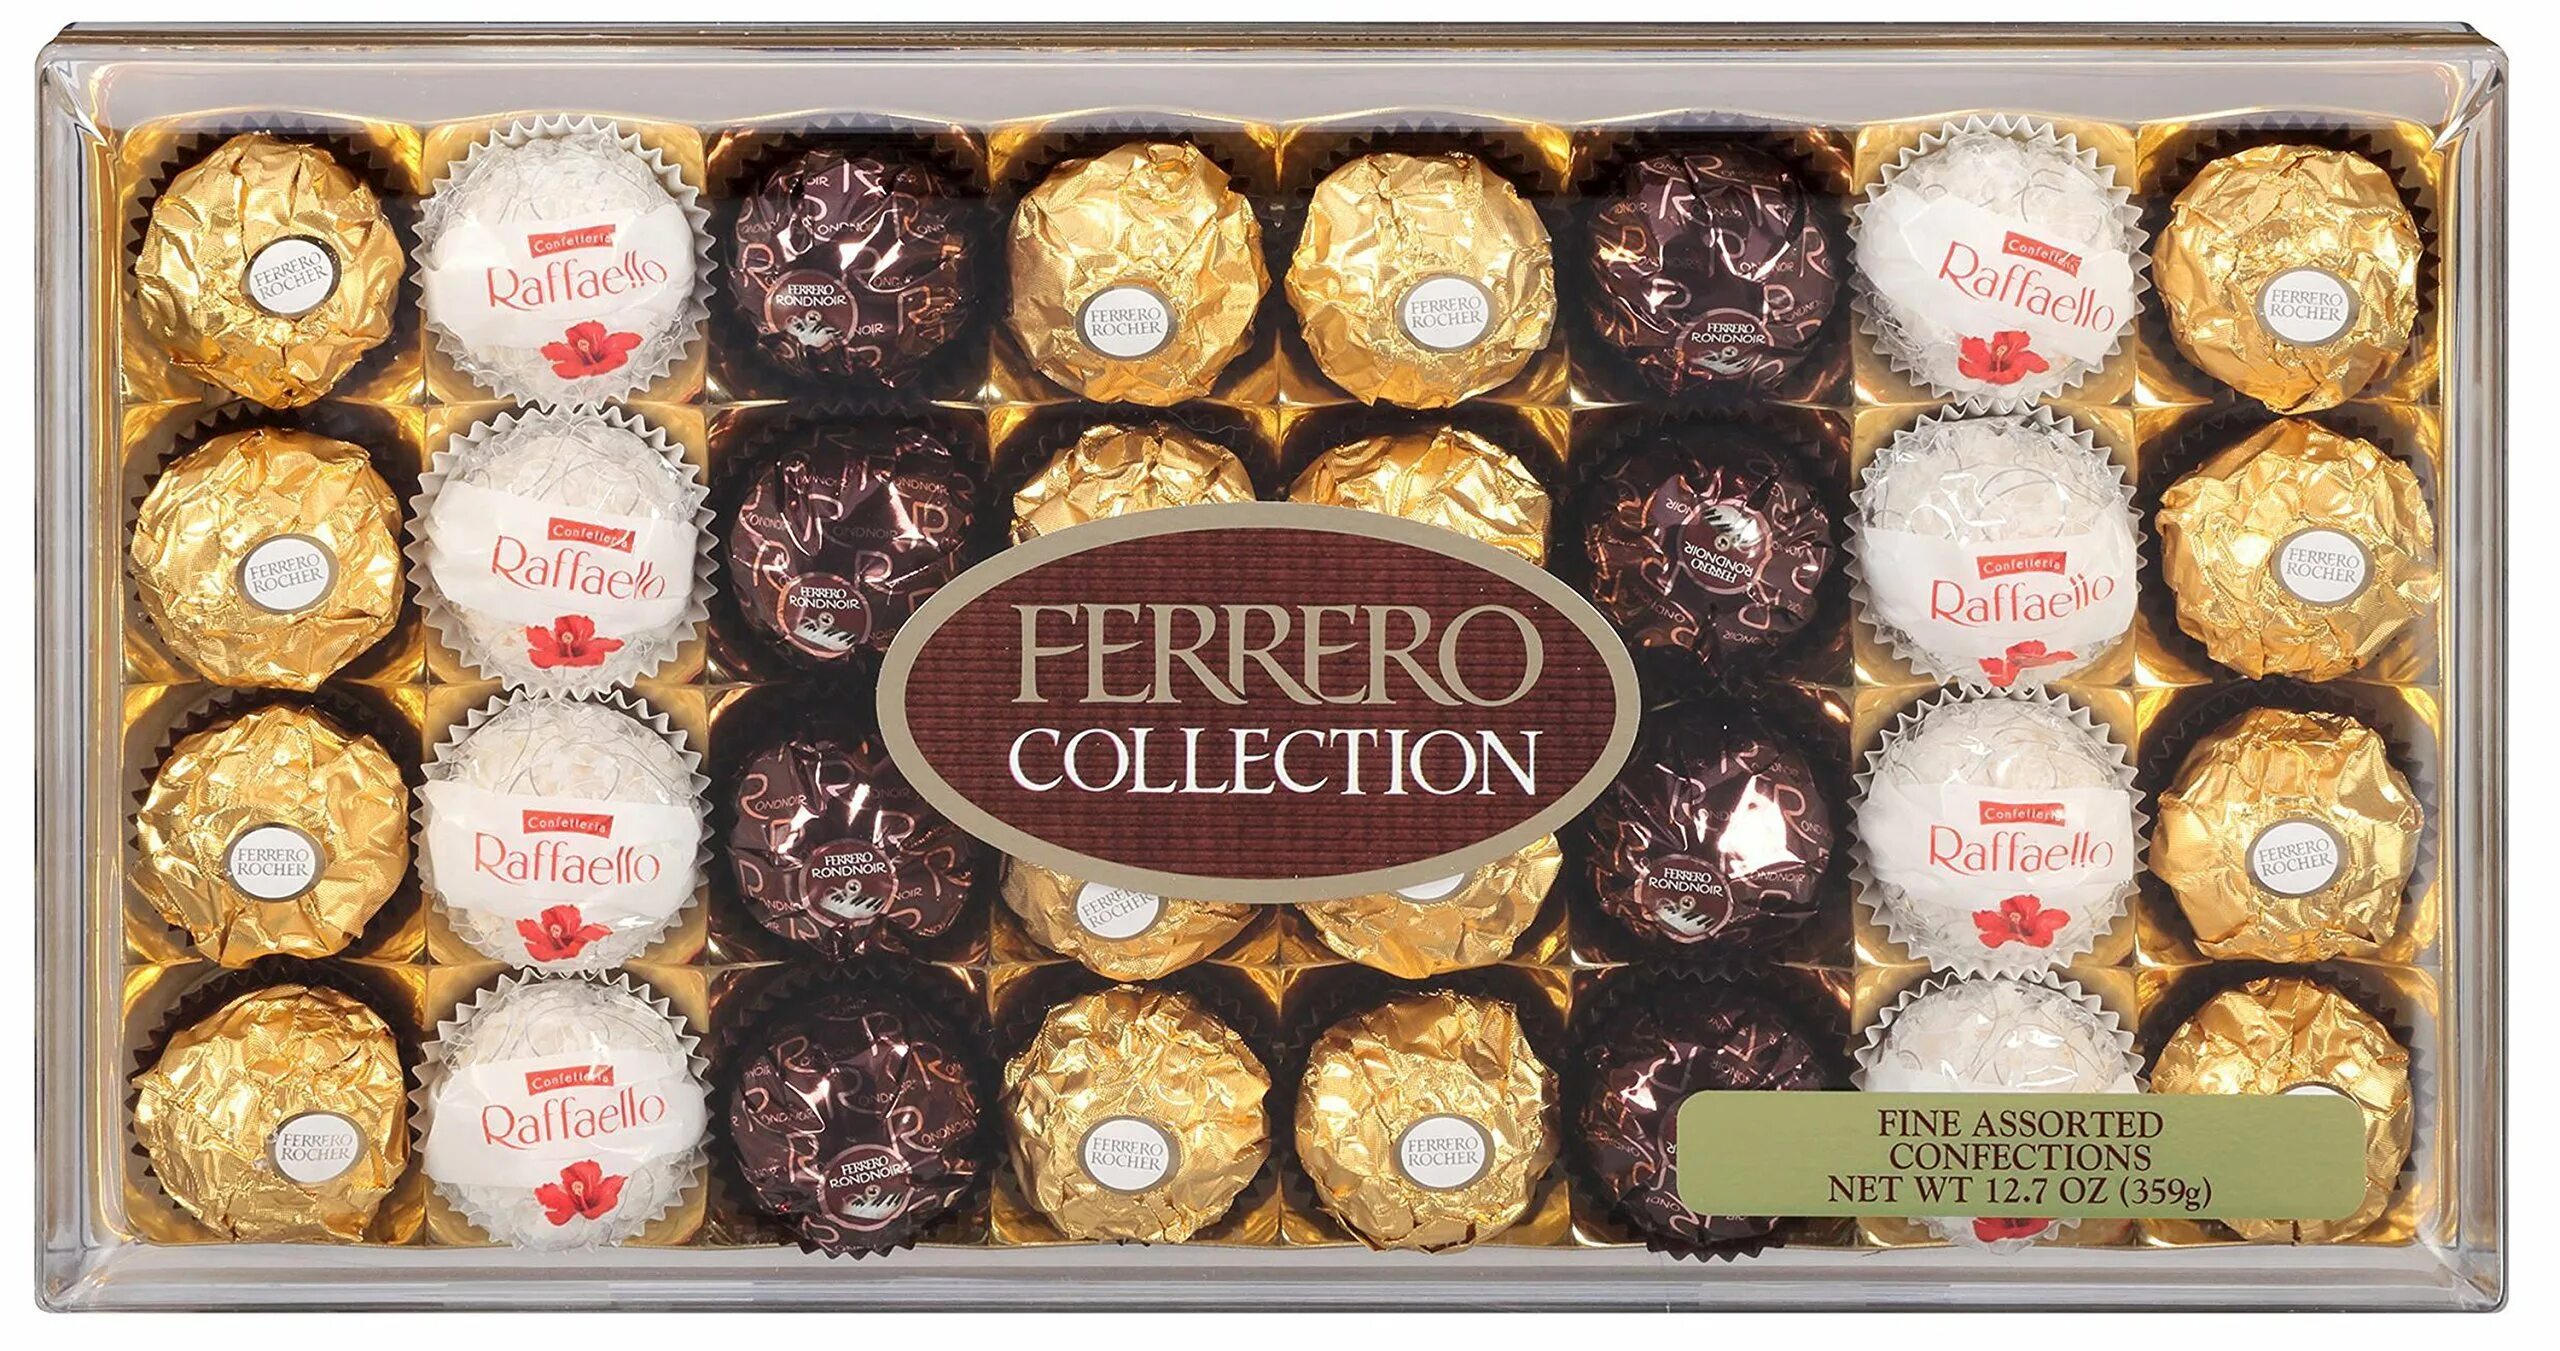 Коллекция Ферреро т32. Ферреро Роше коллекшн. Ferrero Rocher collection, 359.2. Ферреро коллекция 359.2г.